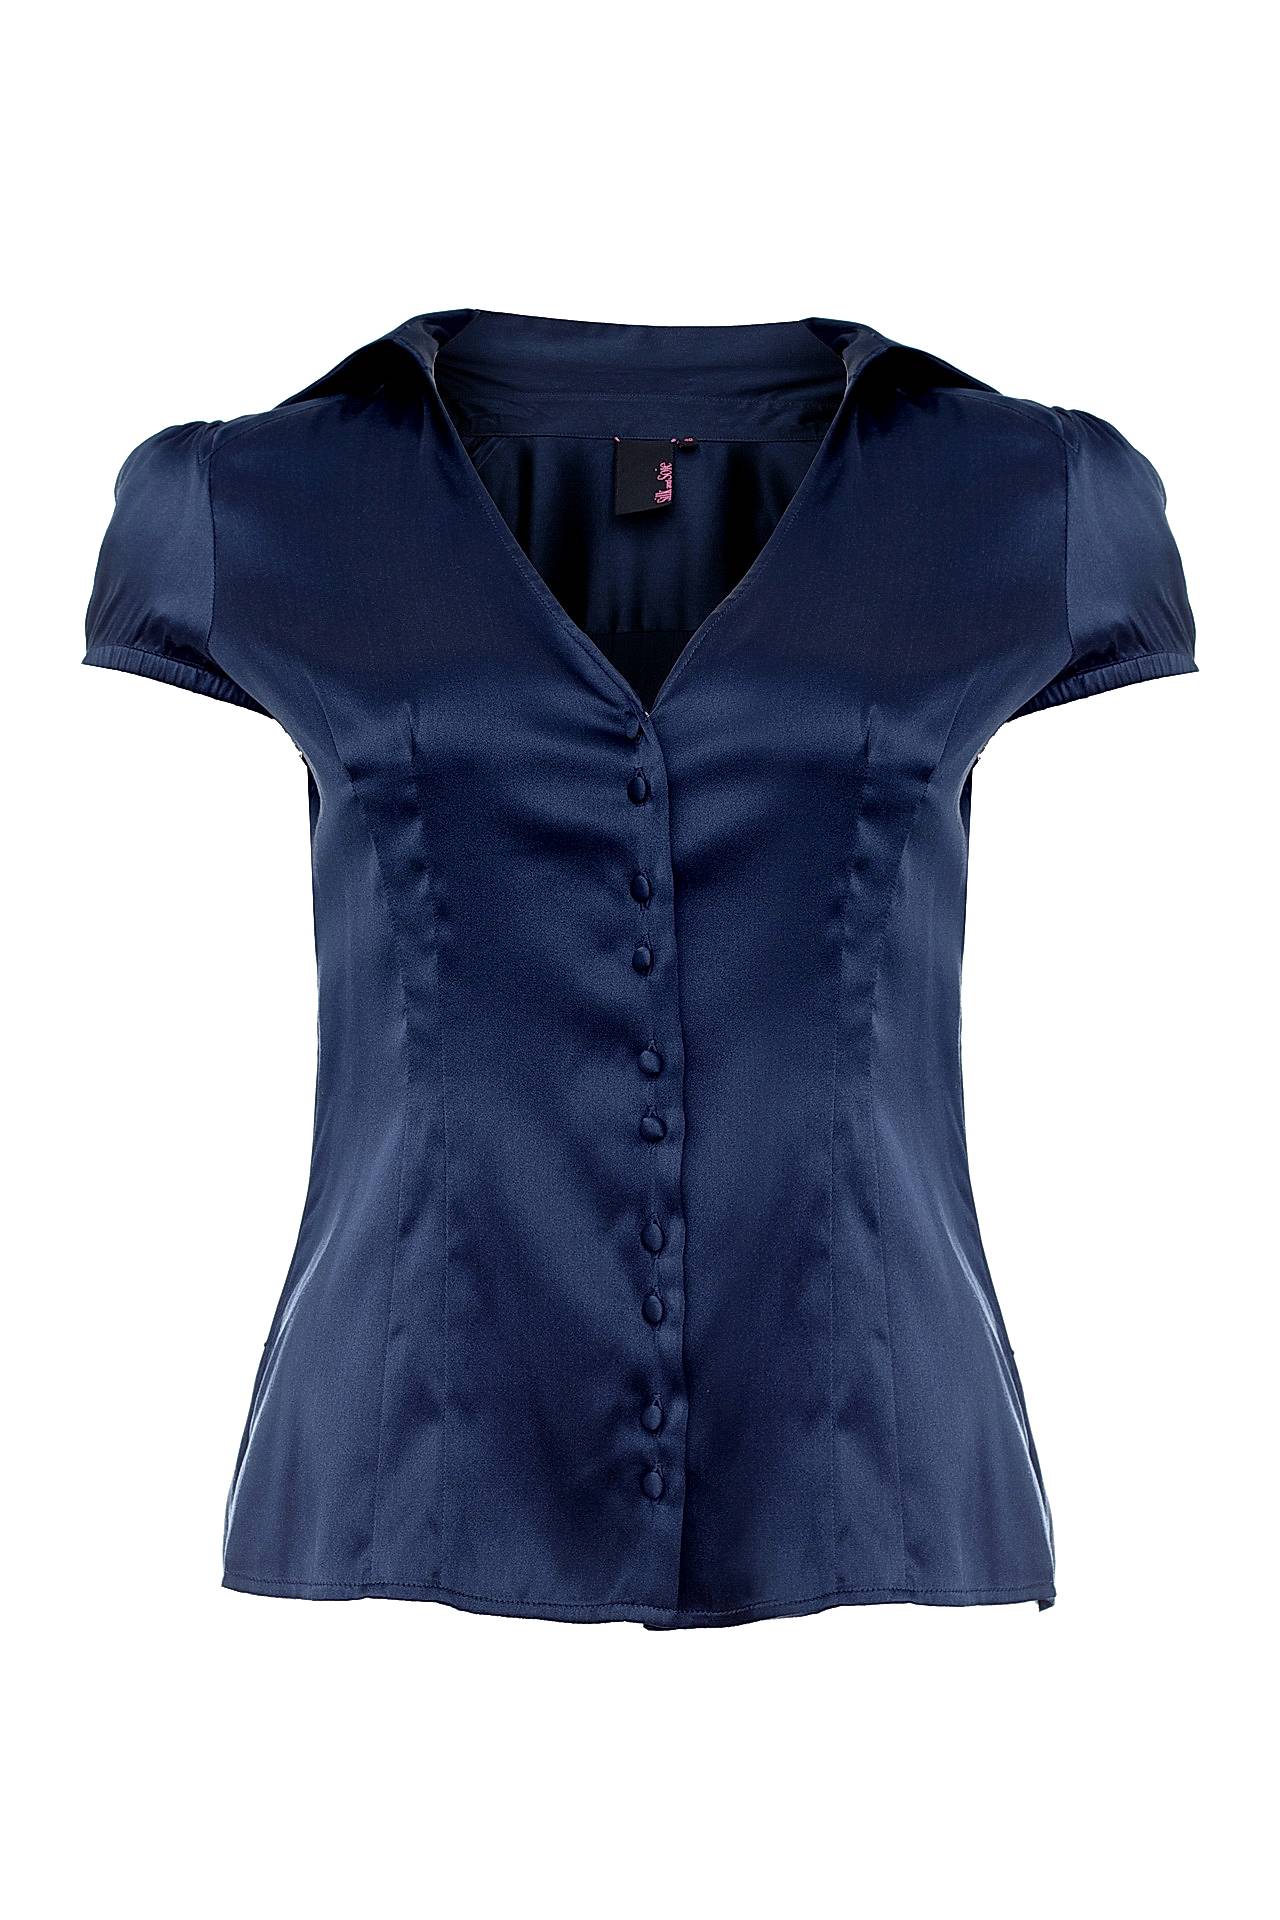 Одежда женская Блузка SILK AND SOIE (SS3922/17). Купить за 6360 руб.